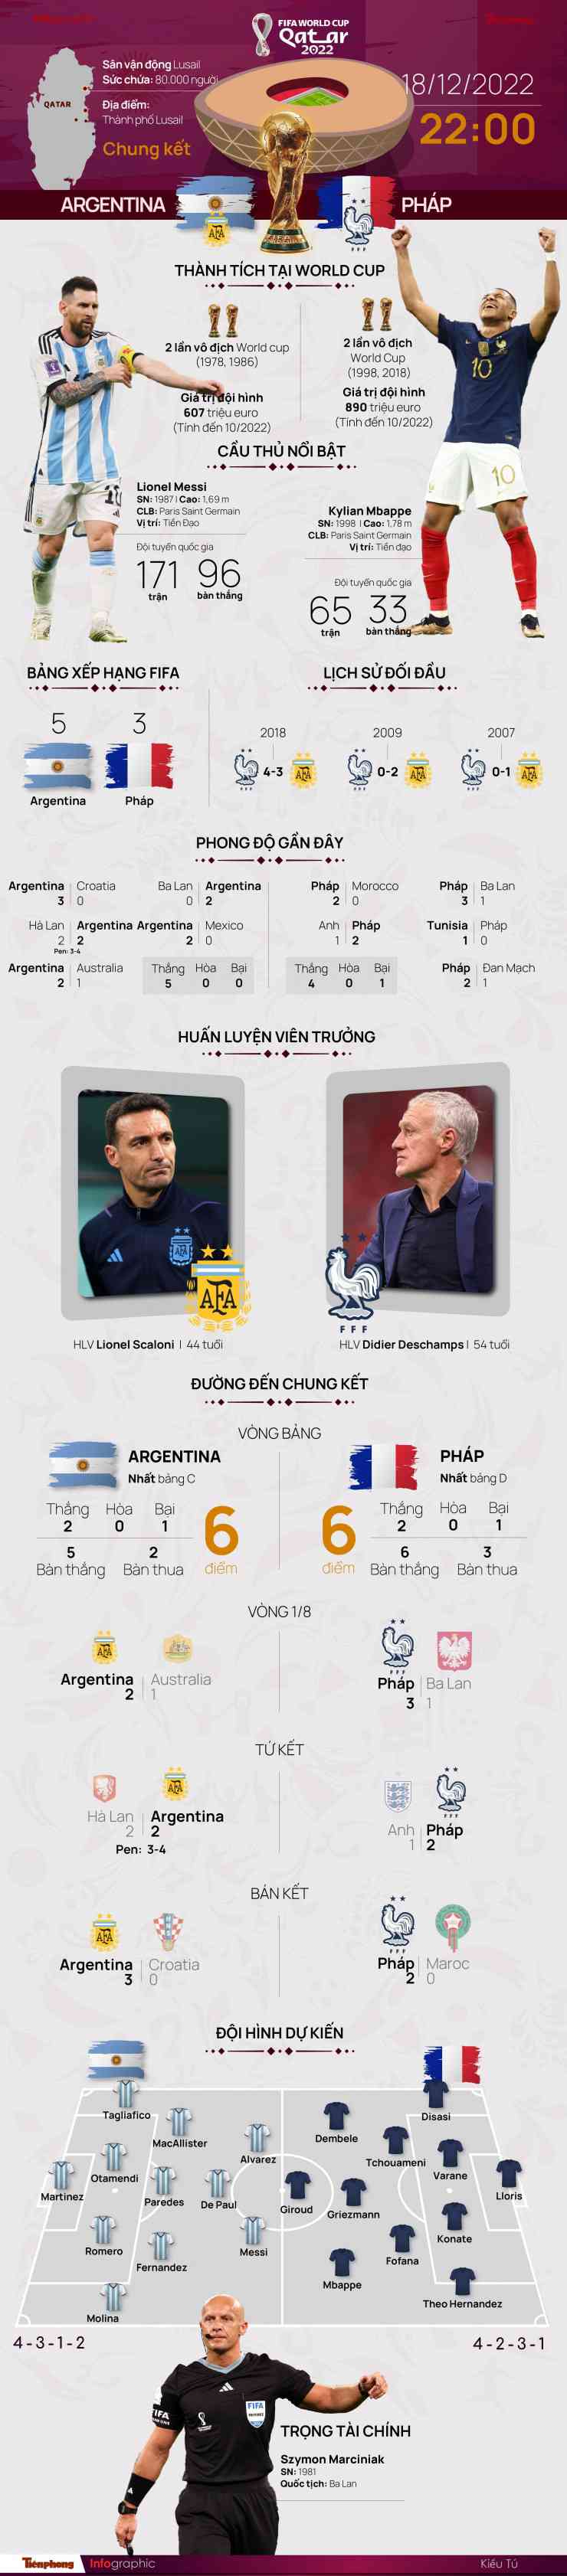 Chung kết World Cup 2022: Tương quan trước trận Argentina - Pháp, 22 giờ 18/12 - 1